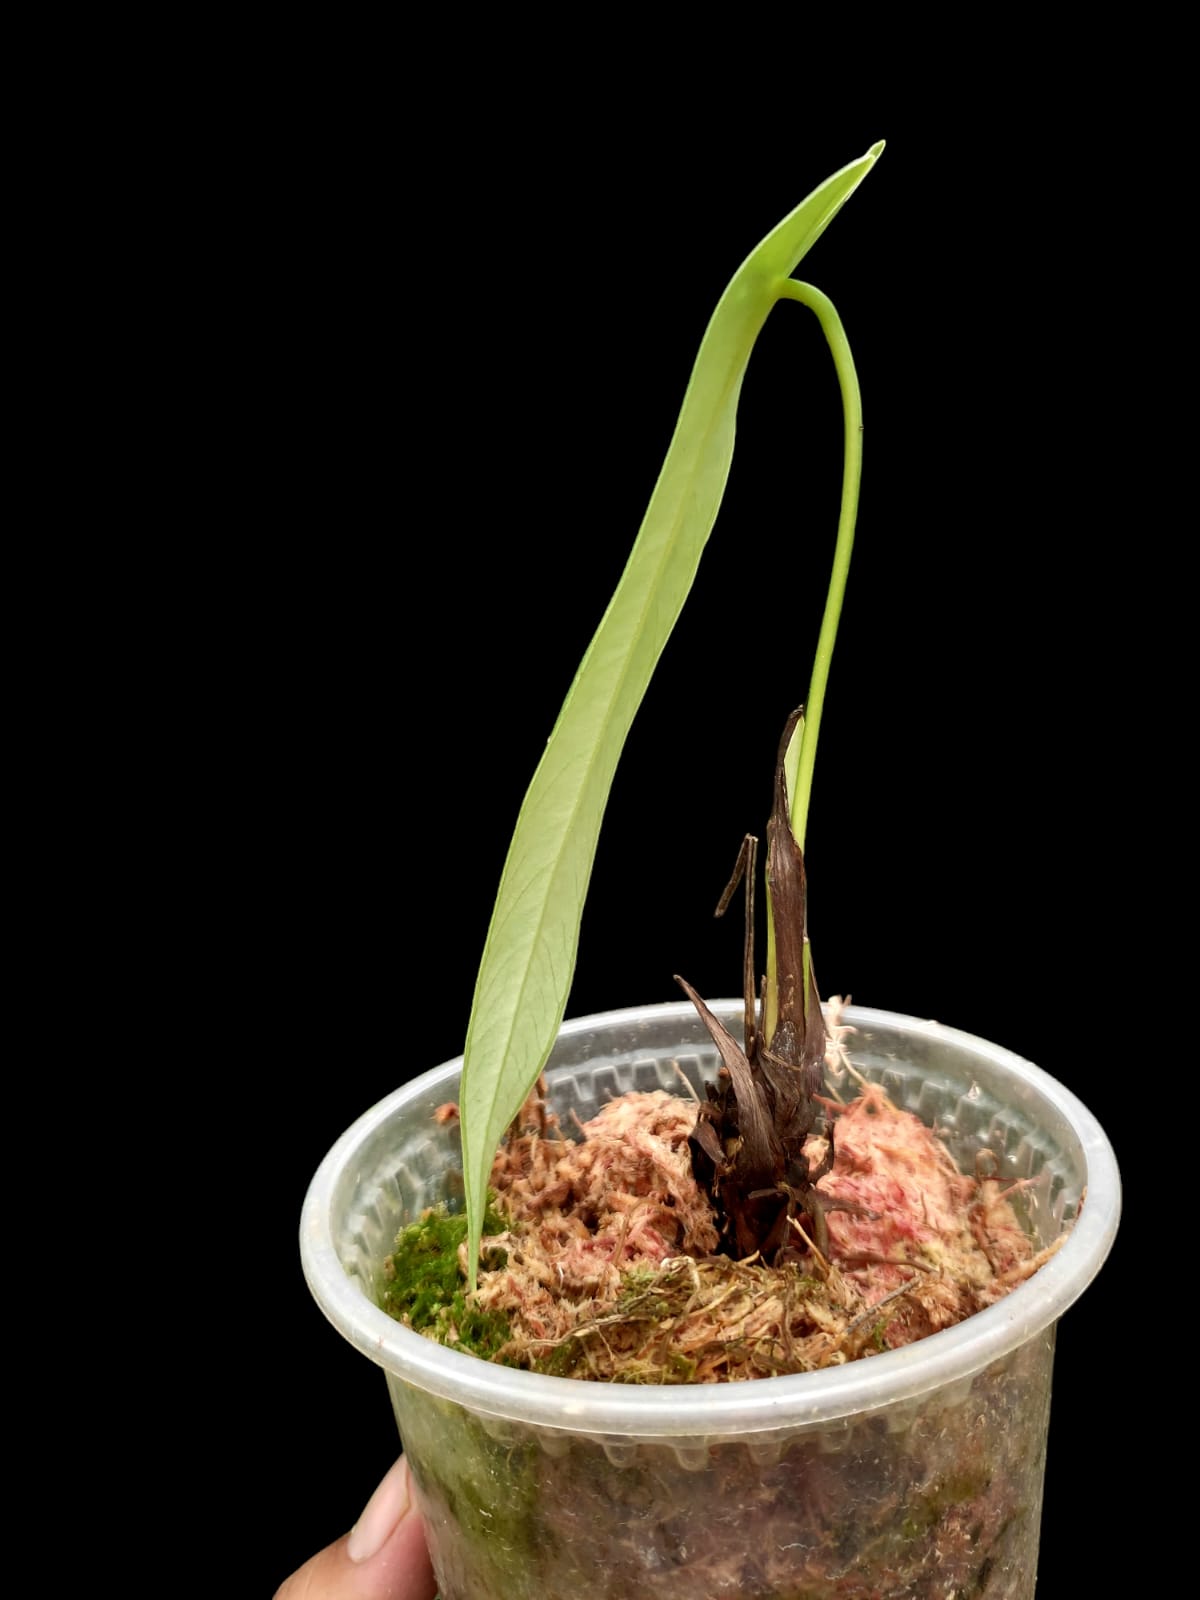 Anthurium Josei Narrow Form (EXACT PLANT)